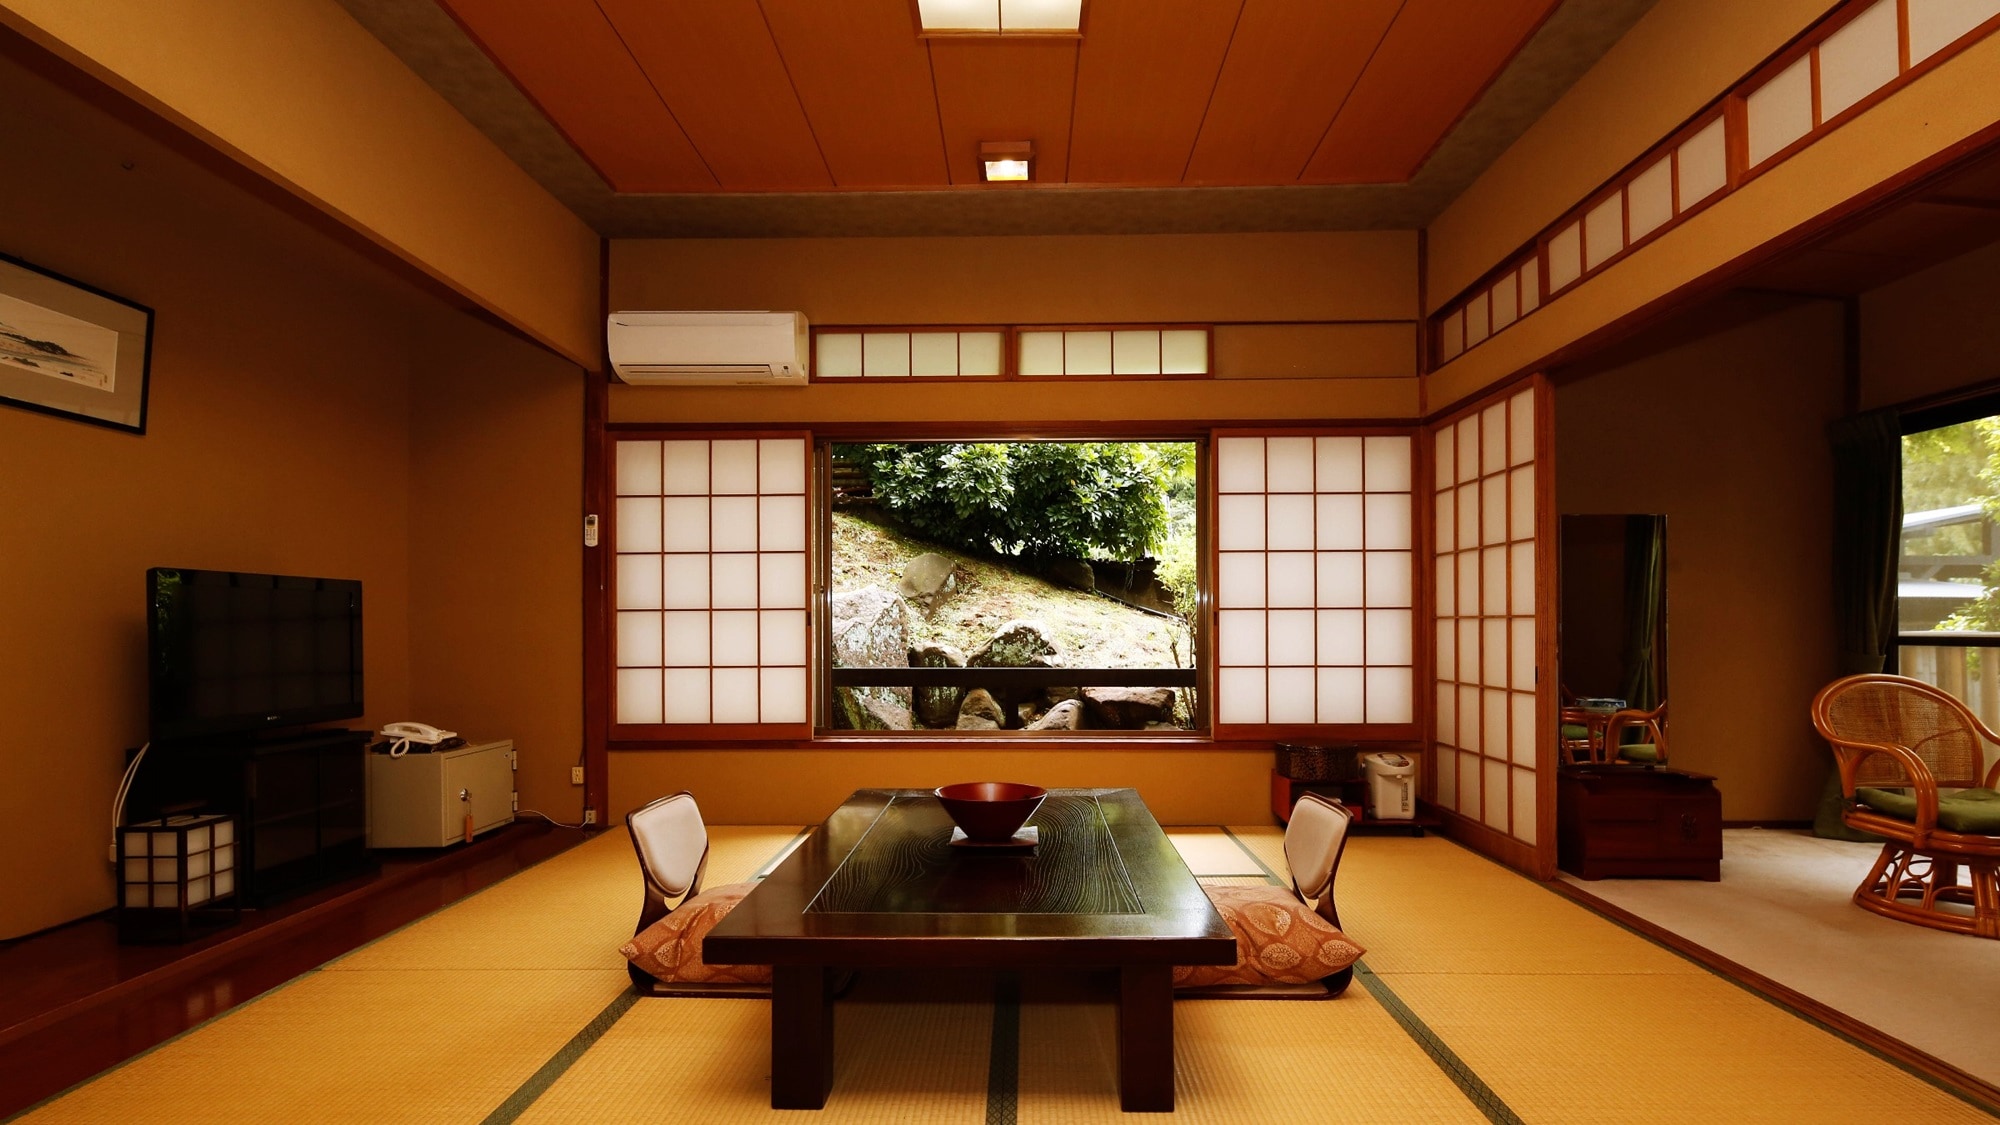 [ปลอดบุหรี่] ห้องสไตล์ญี่ปุ่นขอบกว้าง เสื่อทาทามิ 10 ผืน พร้อมอ่างอาบน้ำไซเปรส